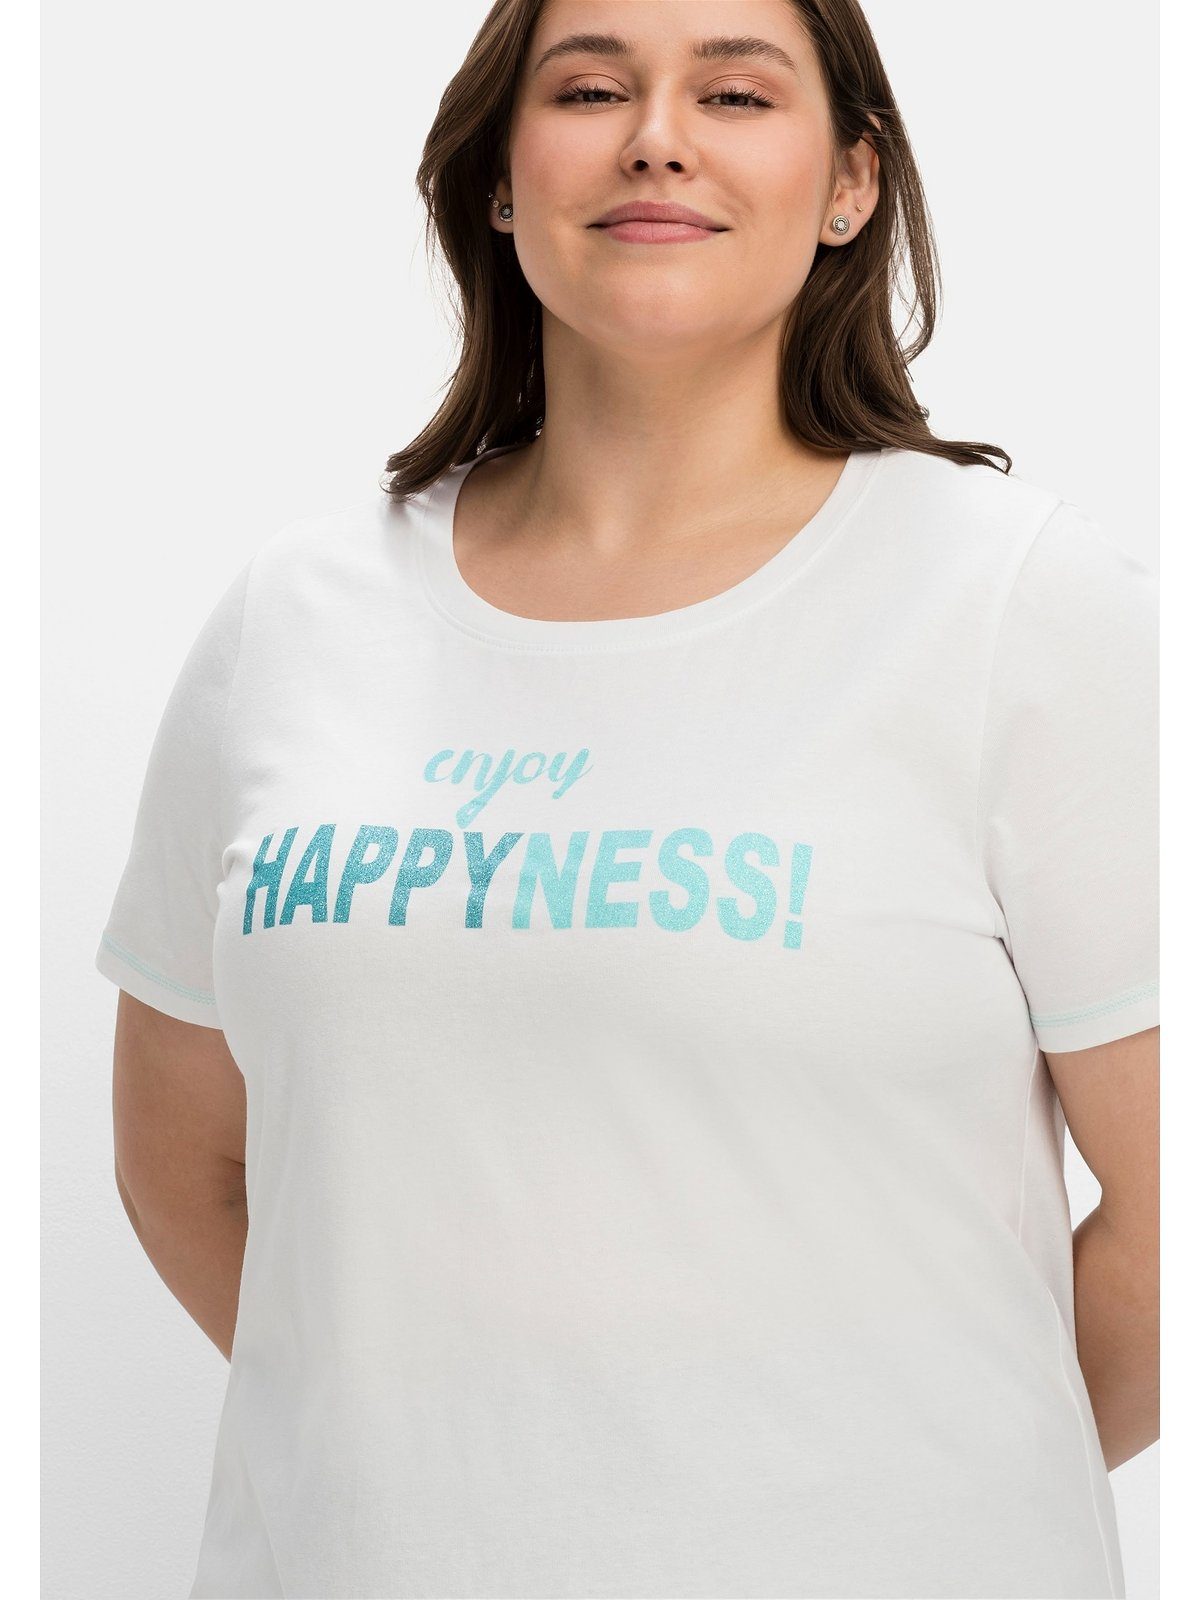 Sheego T-Shirt Große Größen mit tailliert Wordingprint, leicht weiß bedruckt